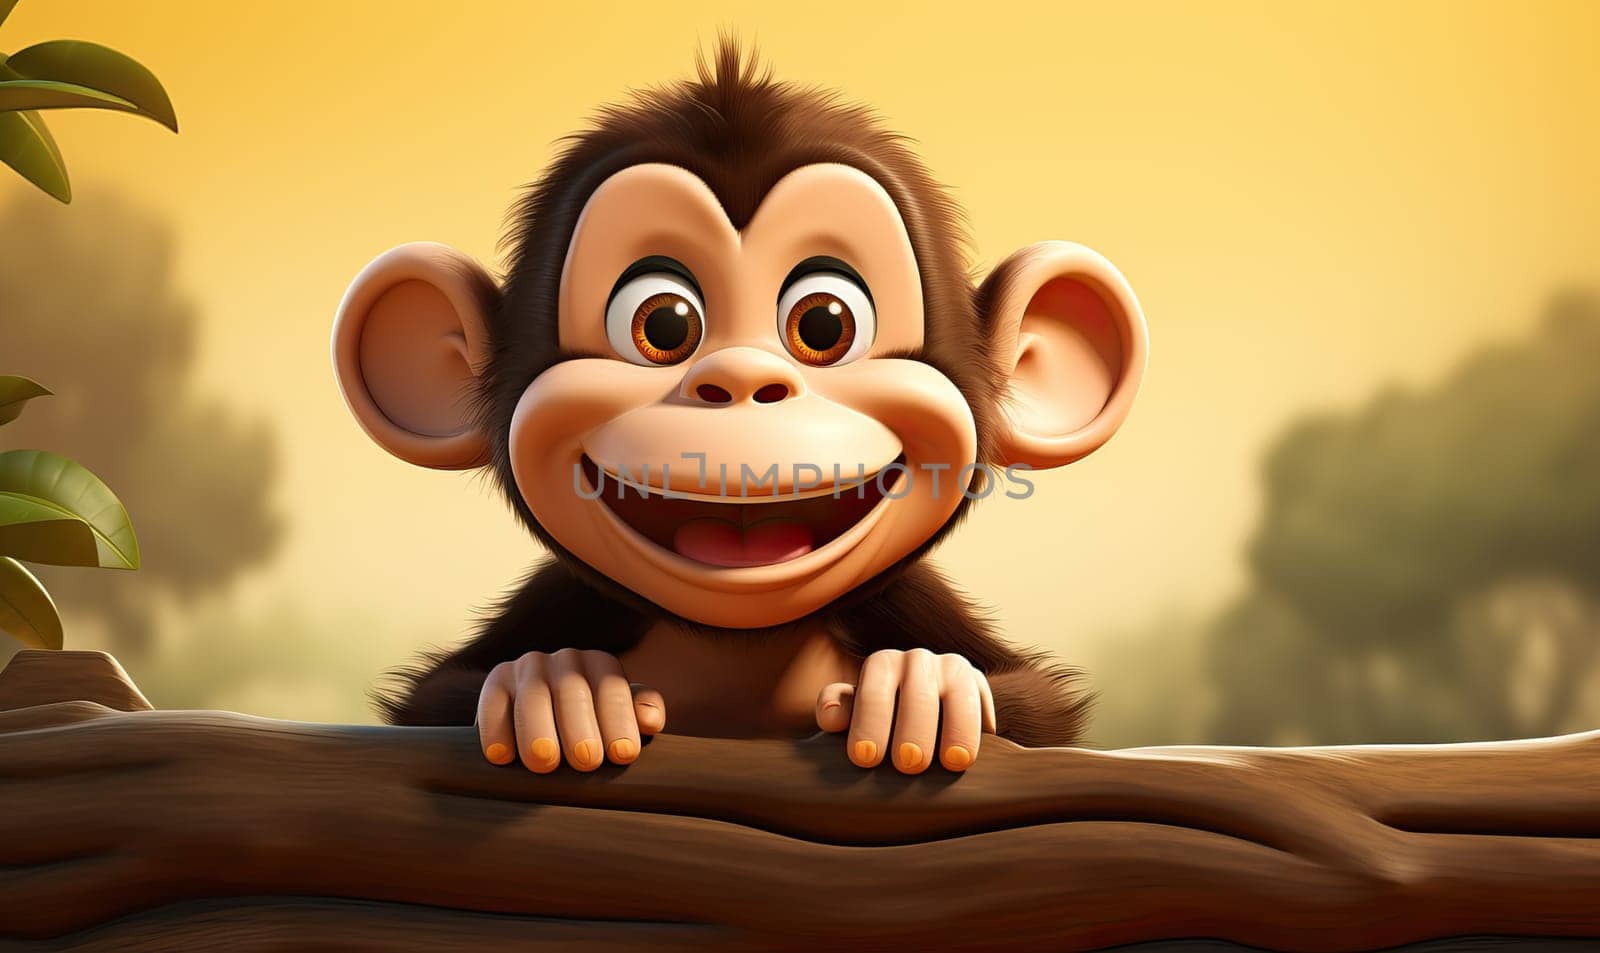 Cartoon animal monkey on an orange background. by Fischeron